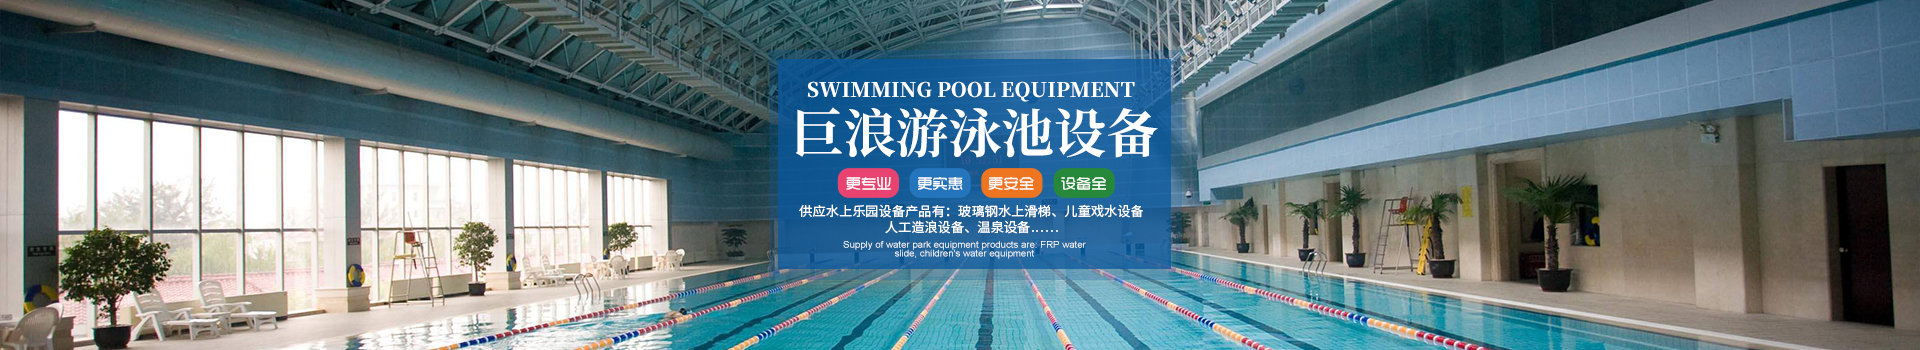 游泳池设备-湖南长沙巨浪游泳池设备有限公司